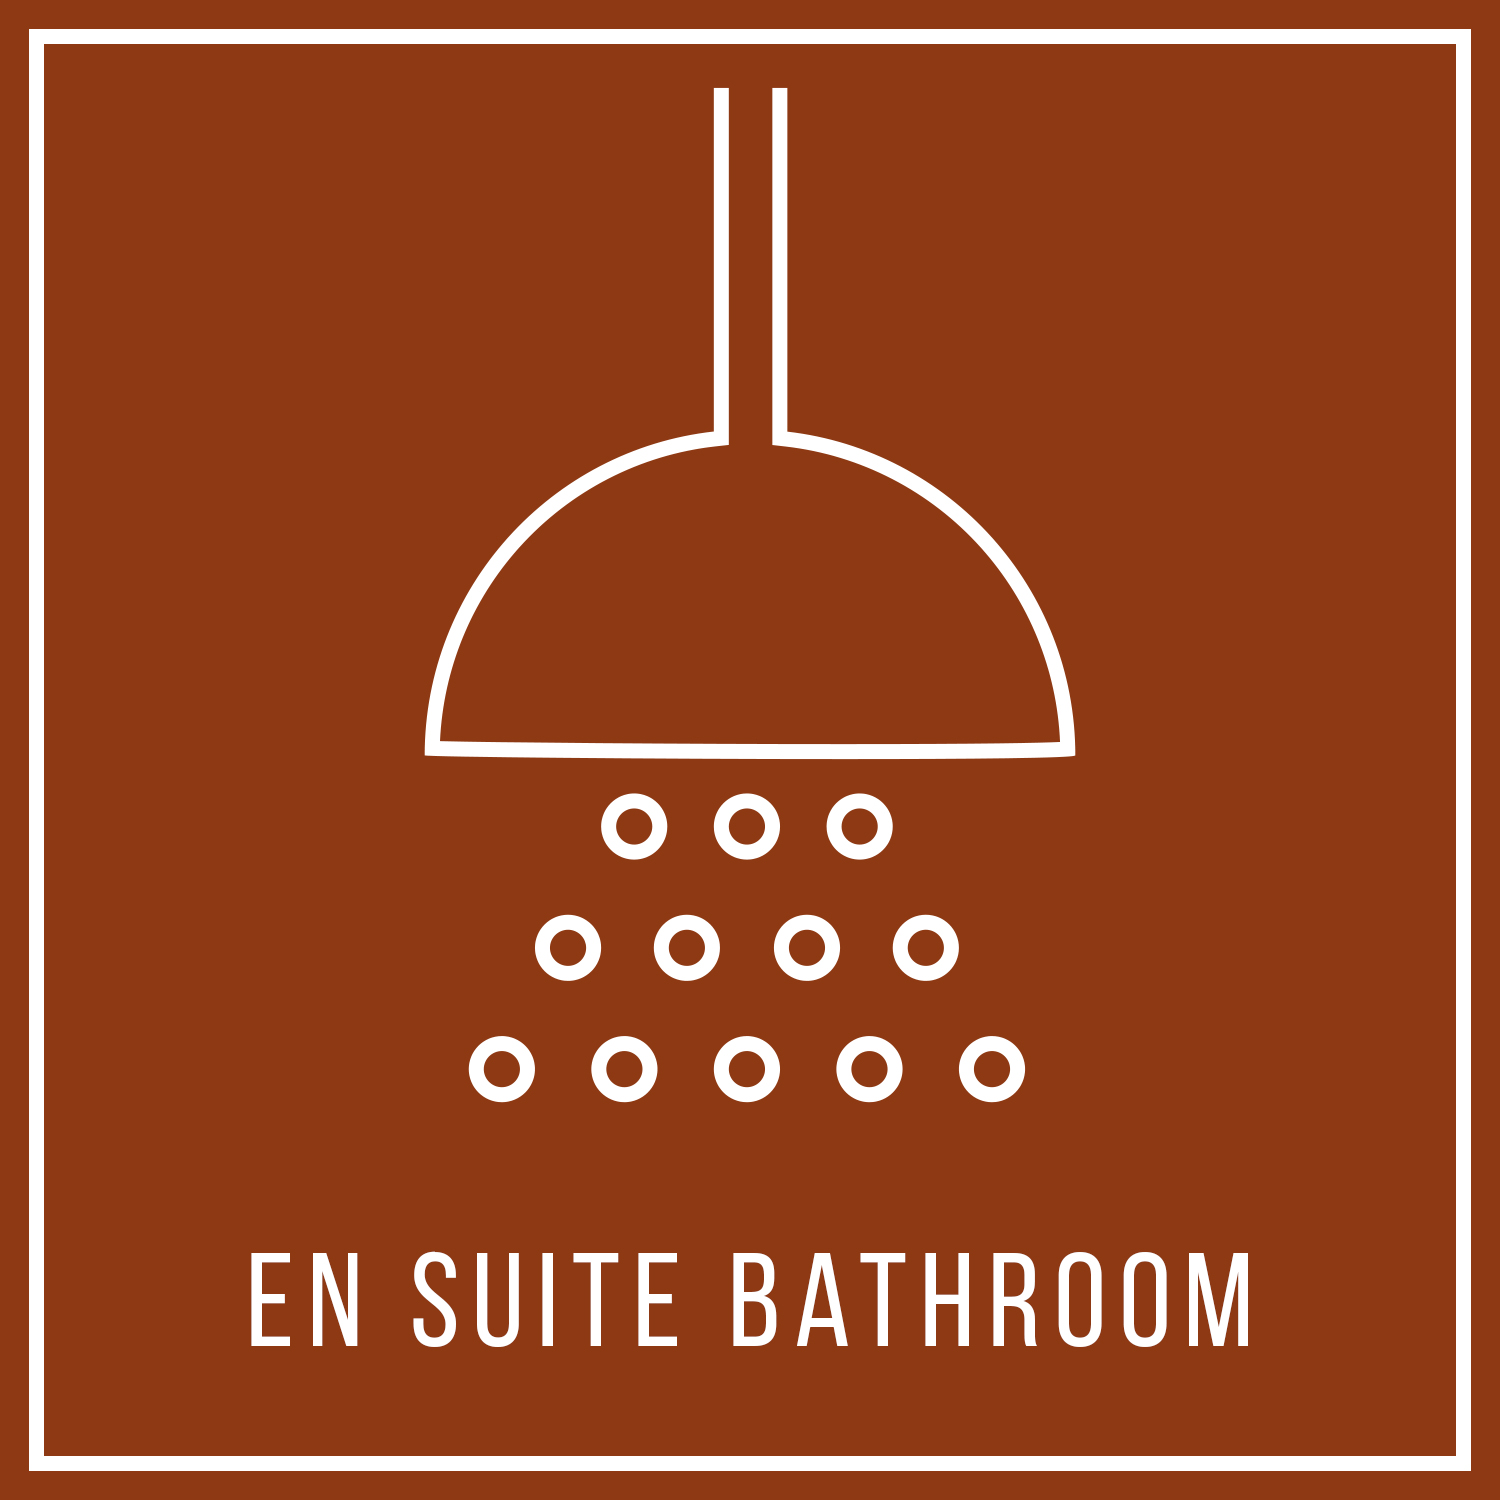 aya-kapadokya-room-features-winery-suite-square-en-suite-bathroom